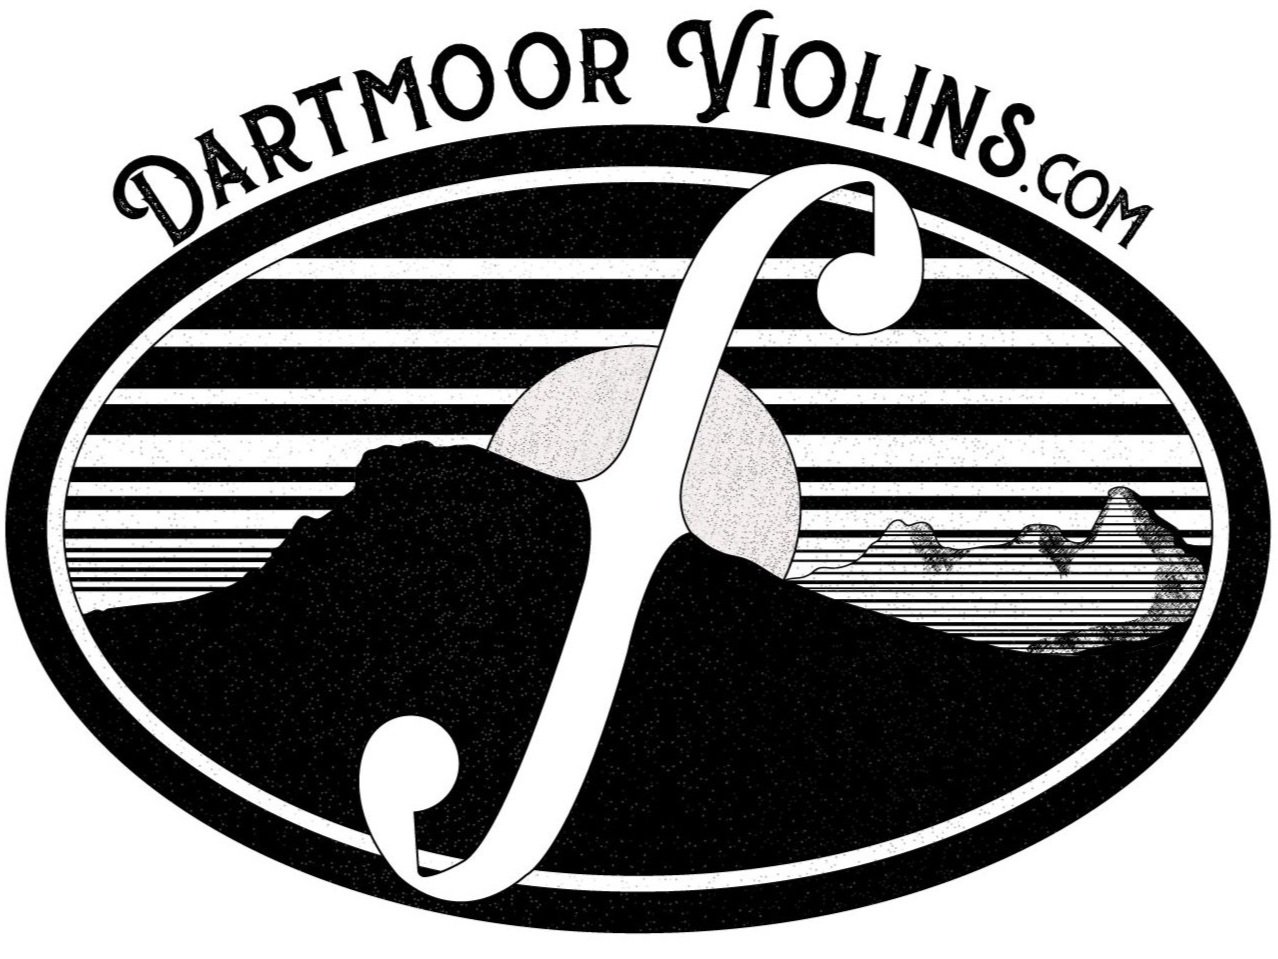 Dartmoor Violins